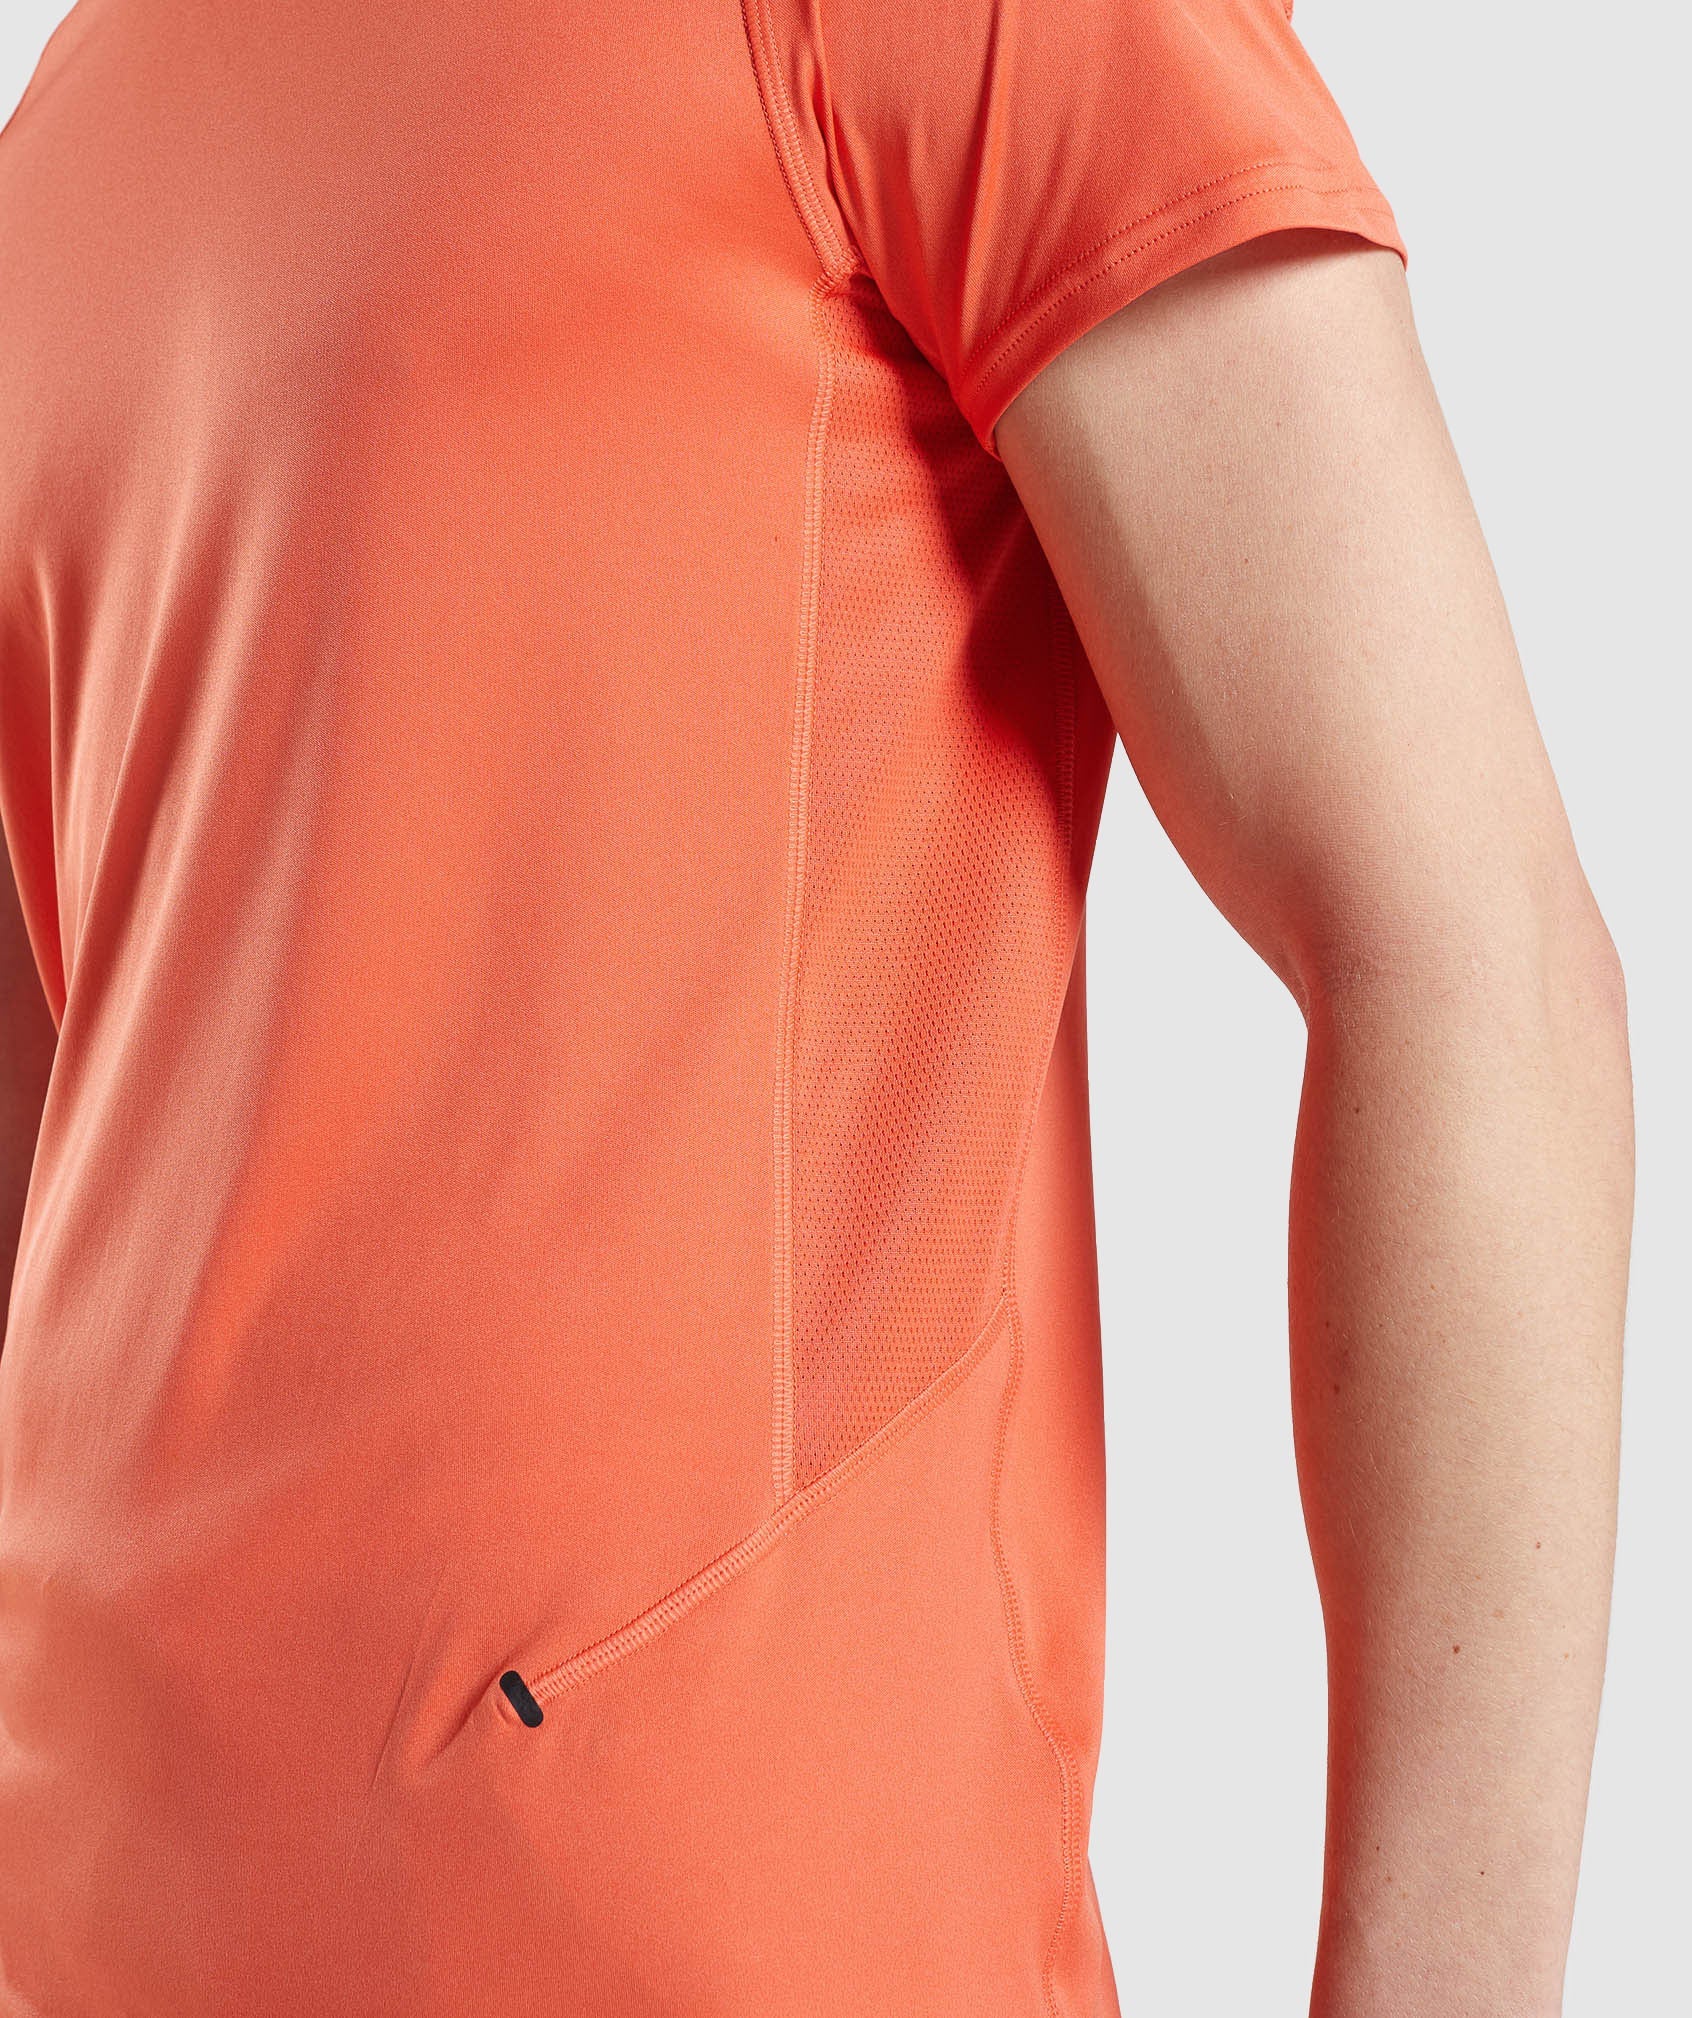 Gymshark Speed Evolve T-Shirt - Papaya Orange